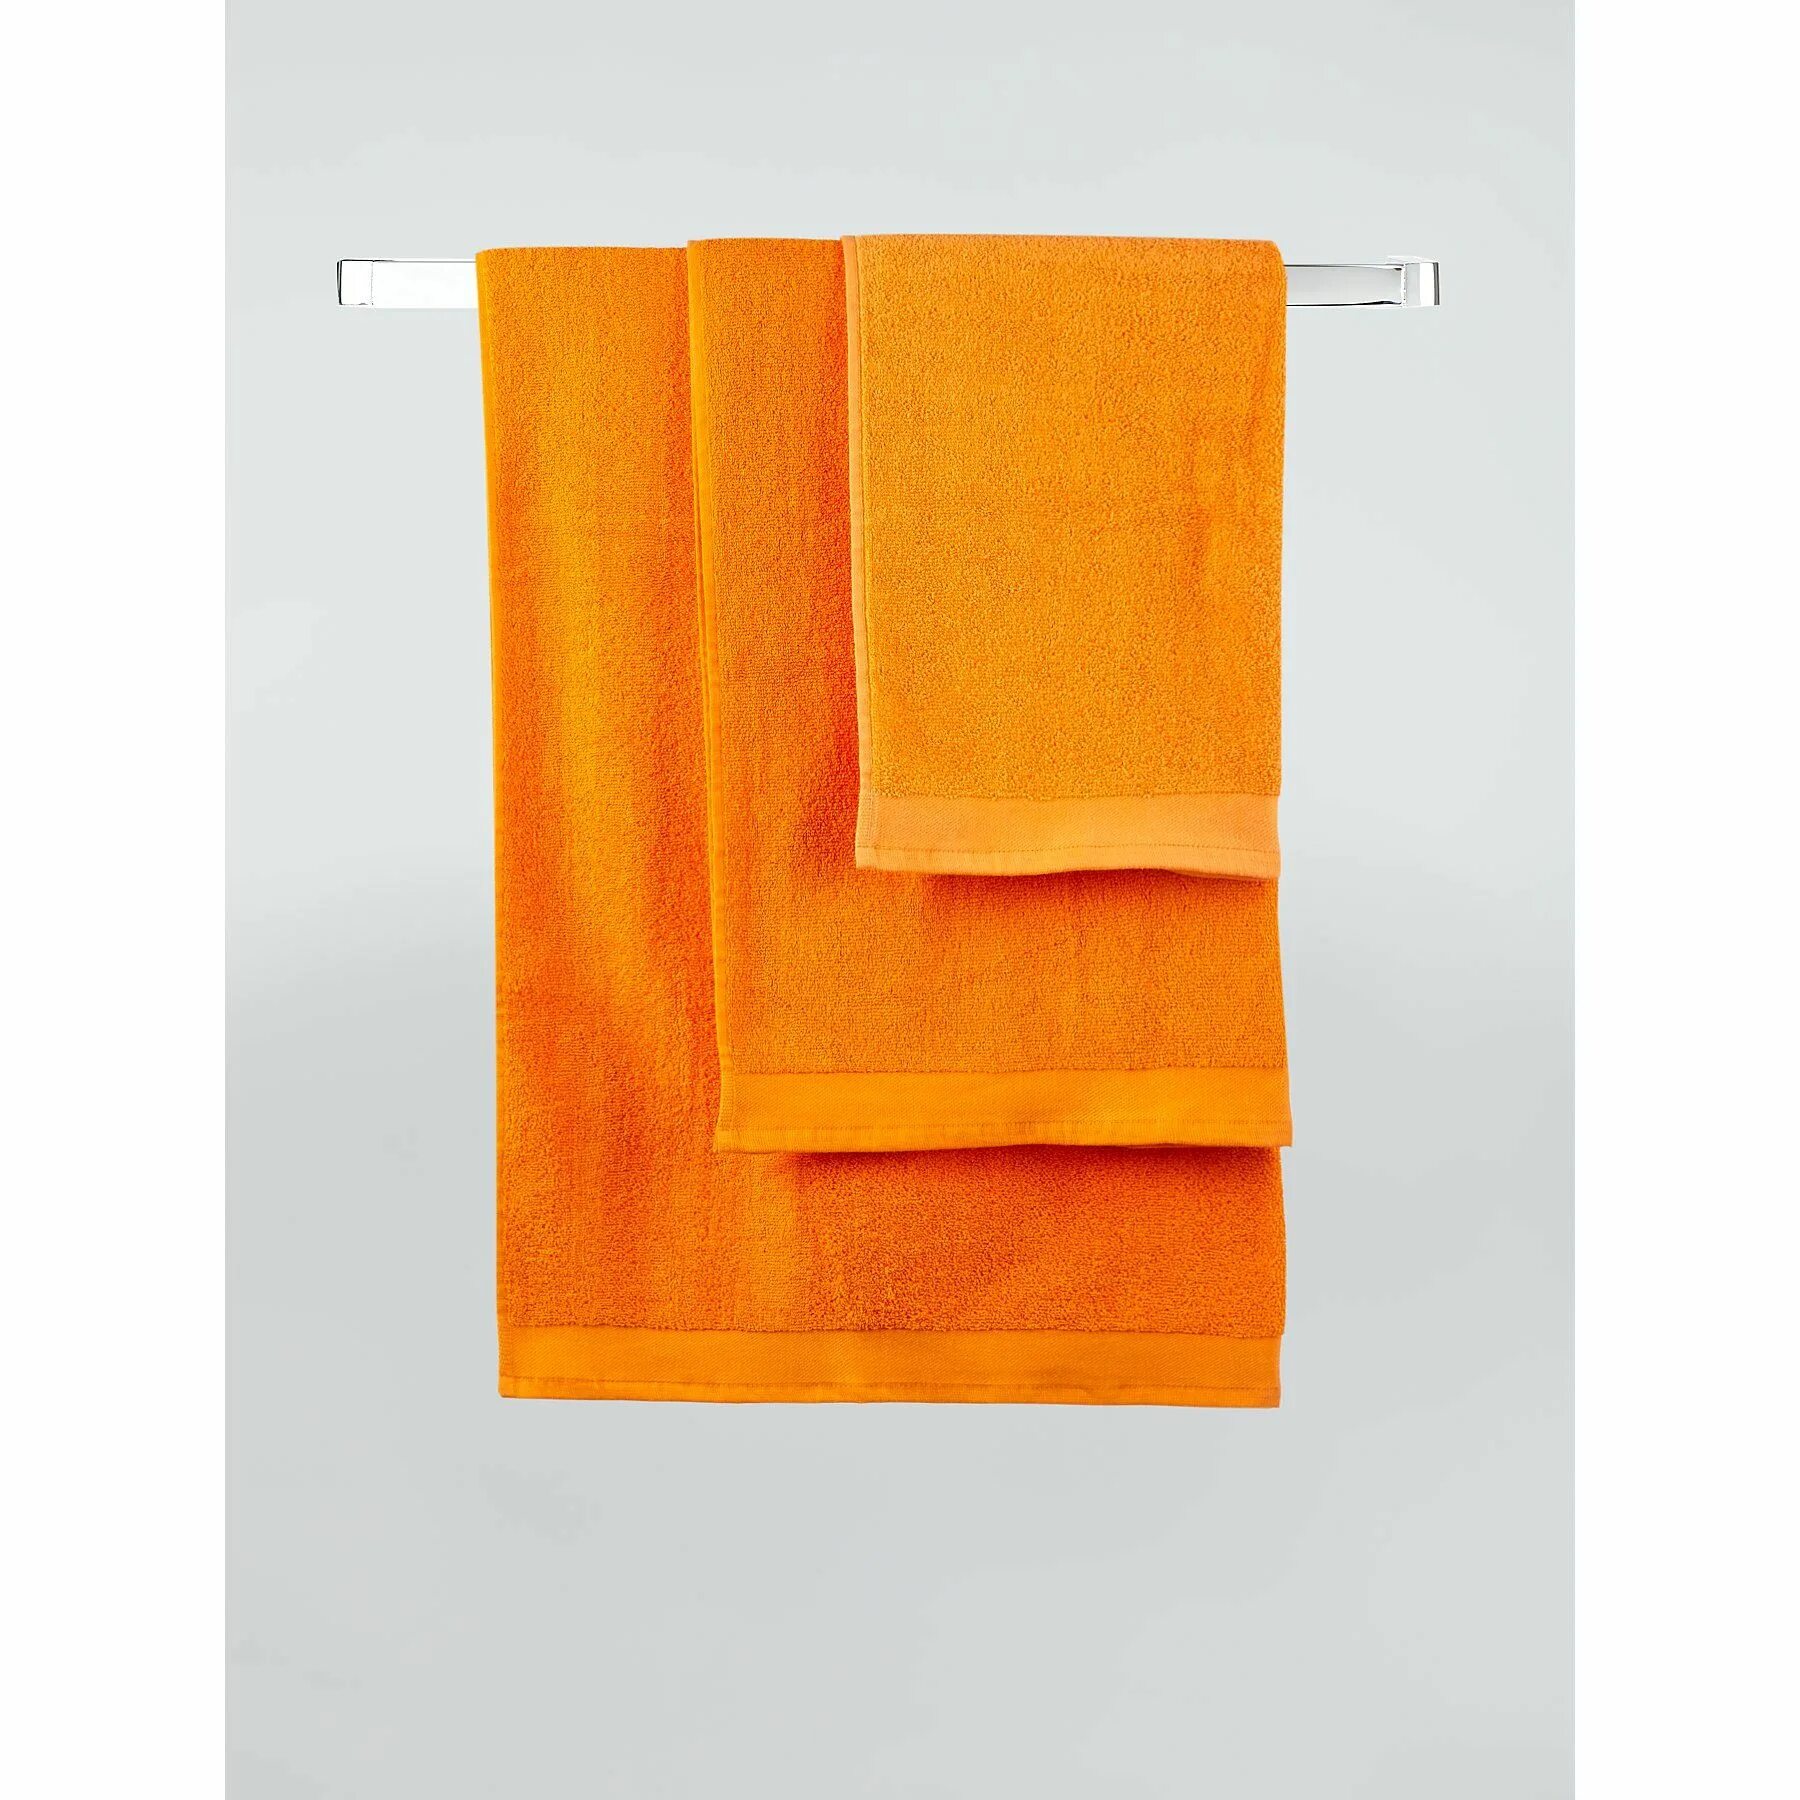 Оранжевый полотенце для стола. Размер полотенца Bath Sheet. Полотенце Udo. Оранжевое полотенце